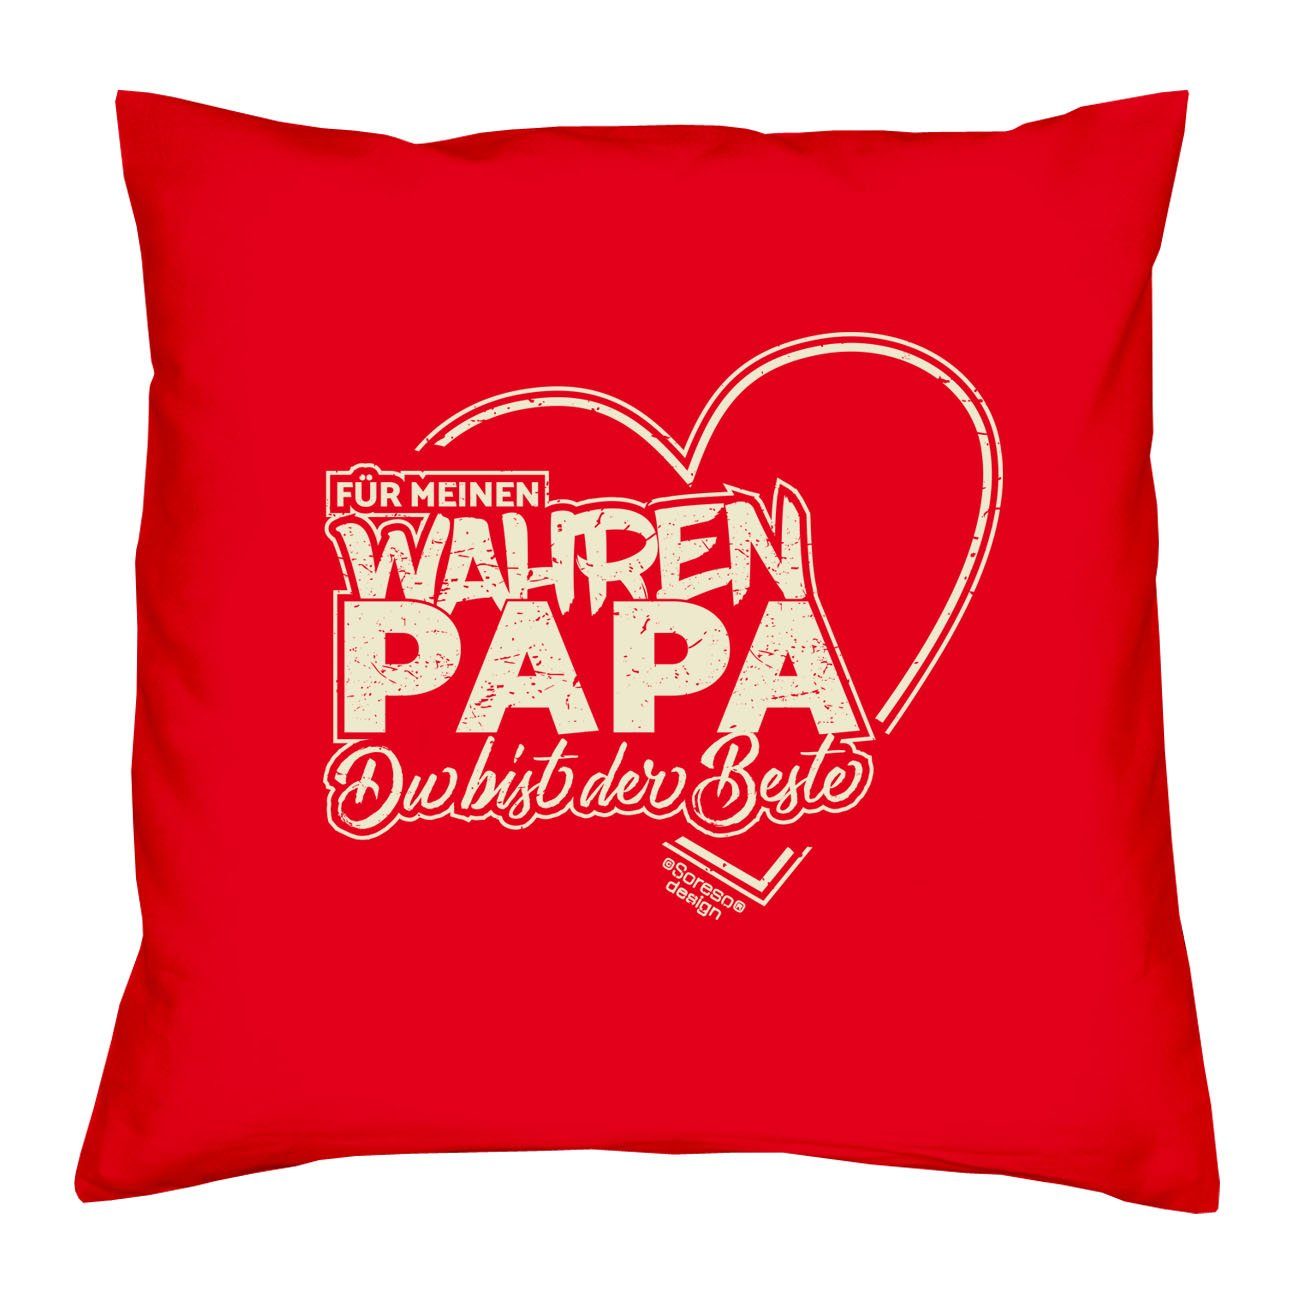 Soreso® Dekokissen Kissen Für meinen wahren Papa & Urkunde für den Weltbesten Papa, Geschenk Geburtstagsgeschenk rot